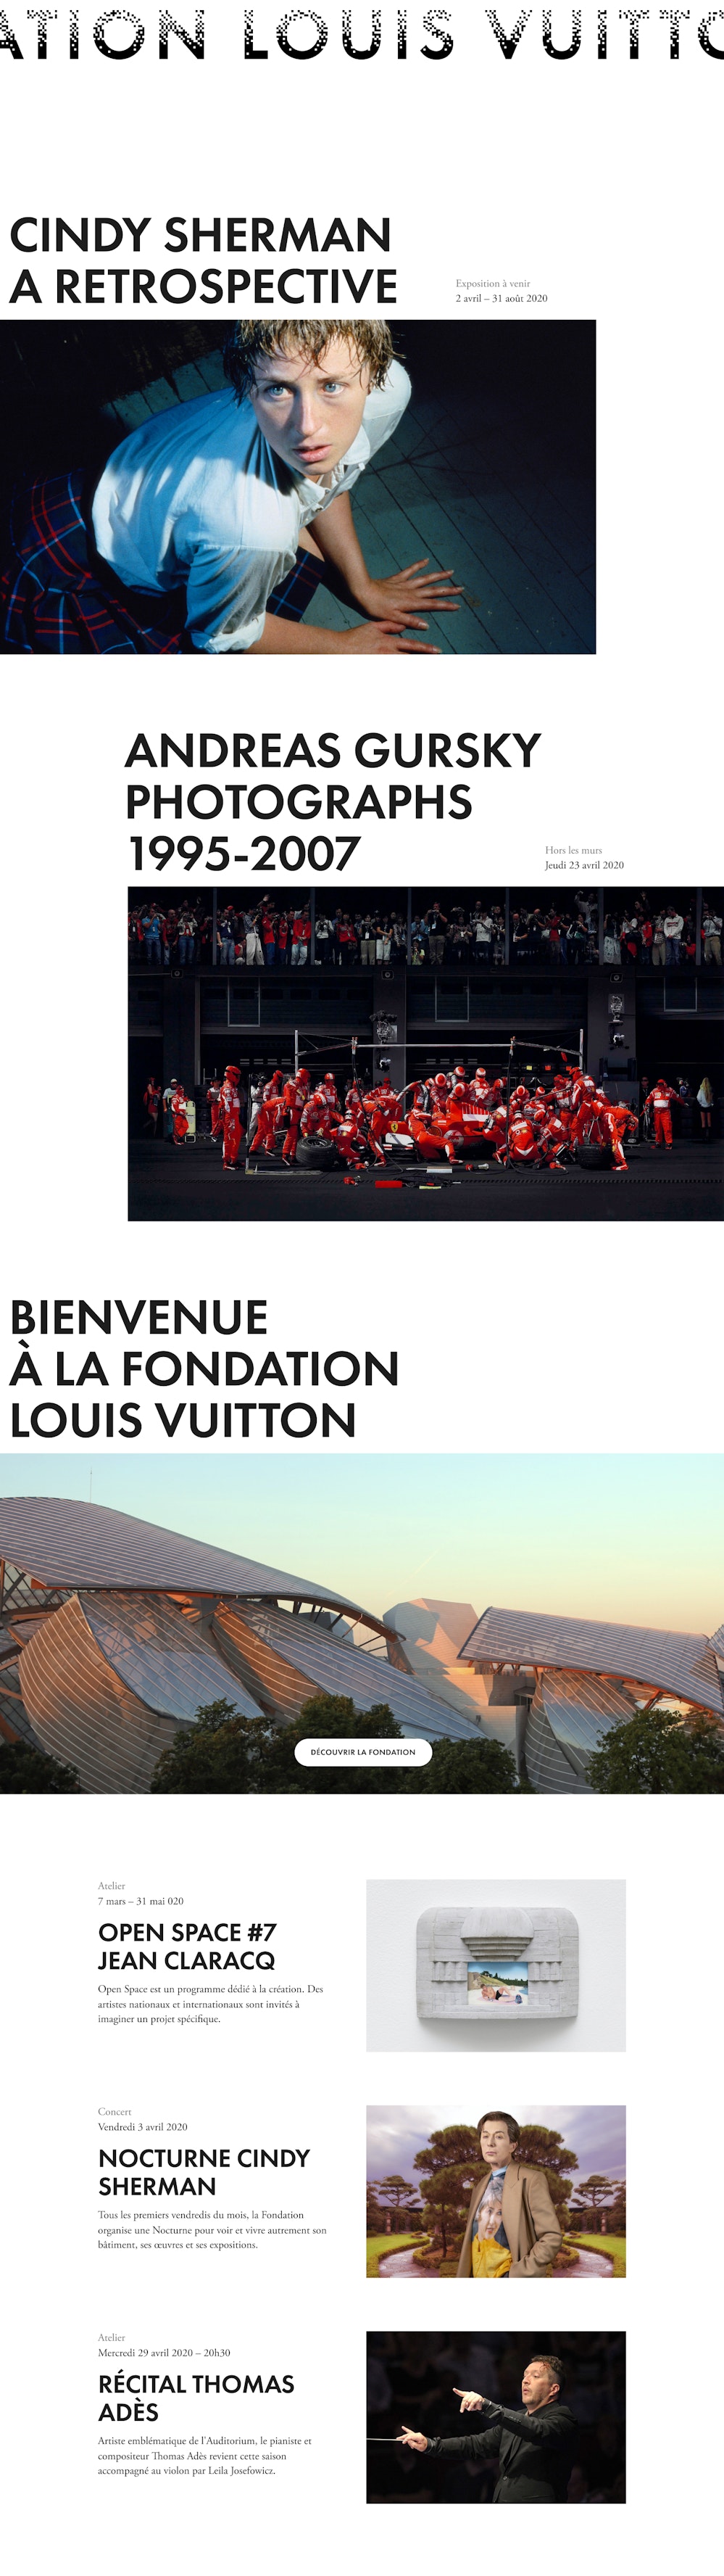 The Fondation Louis Vuitton: Official Website